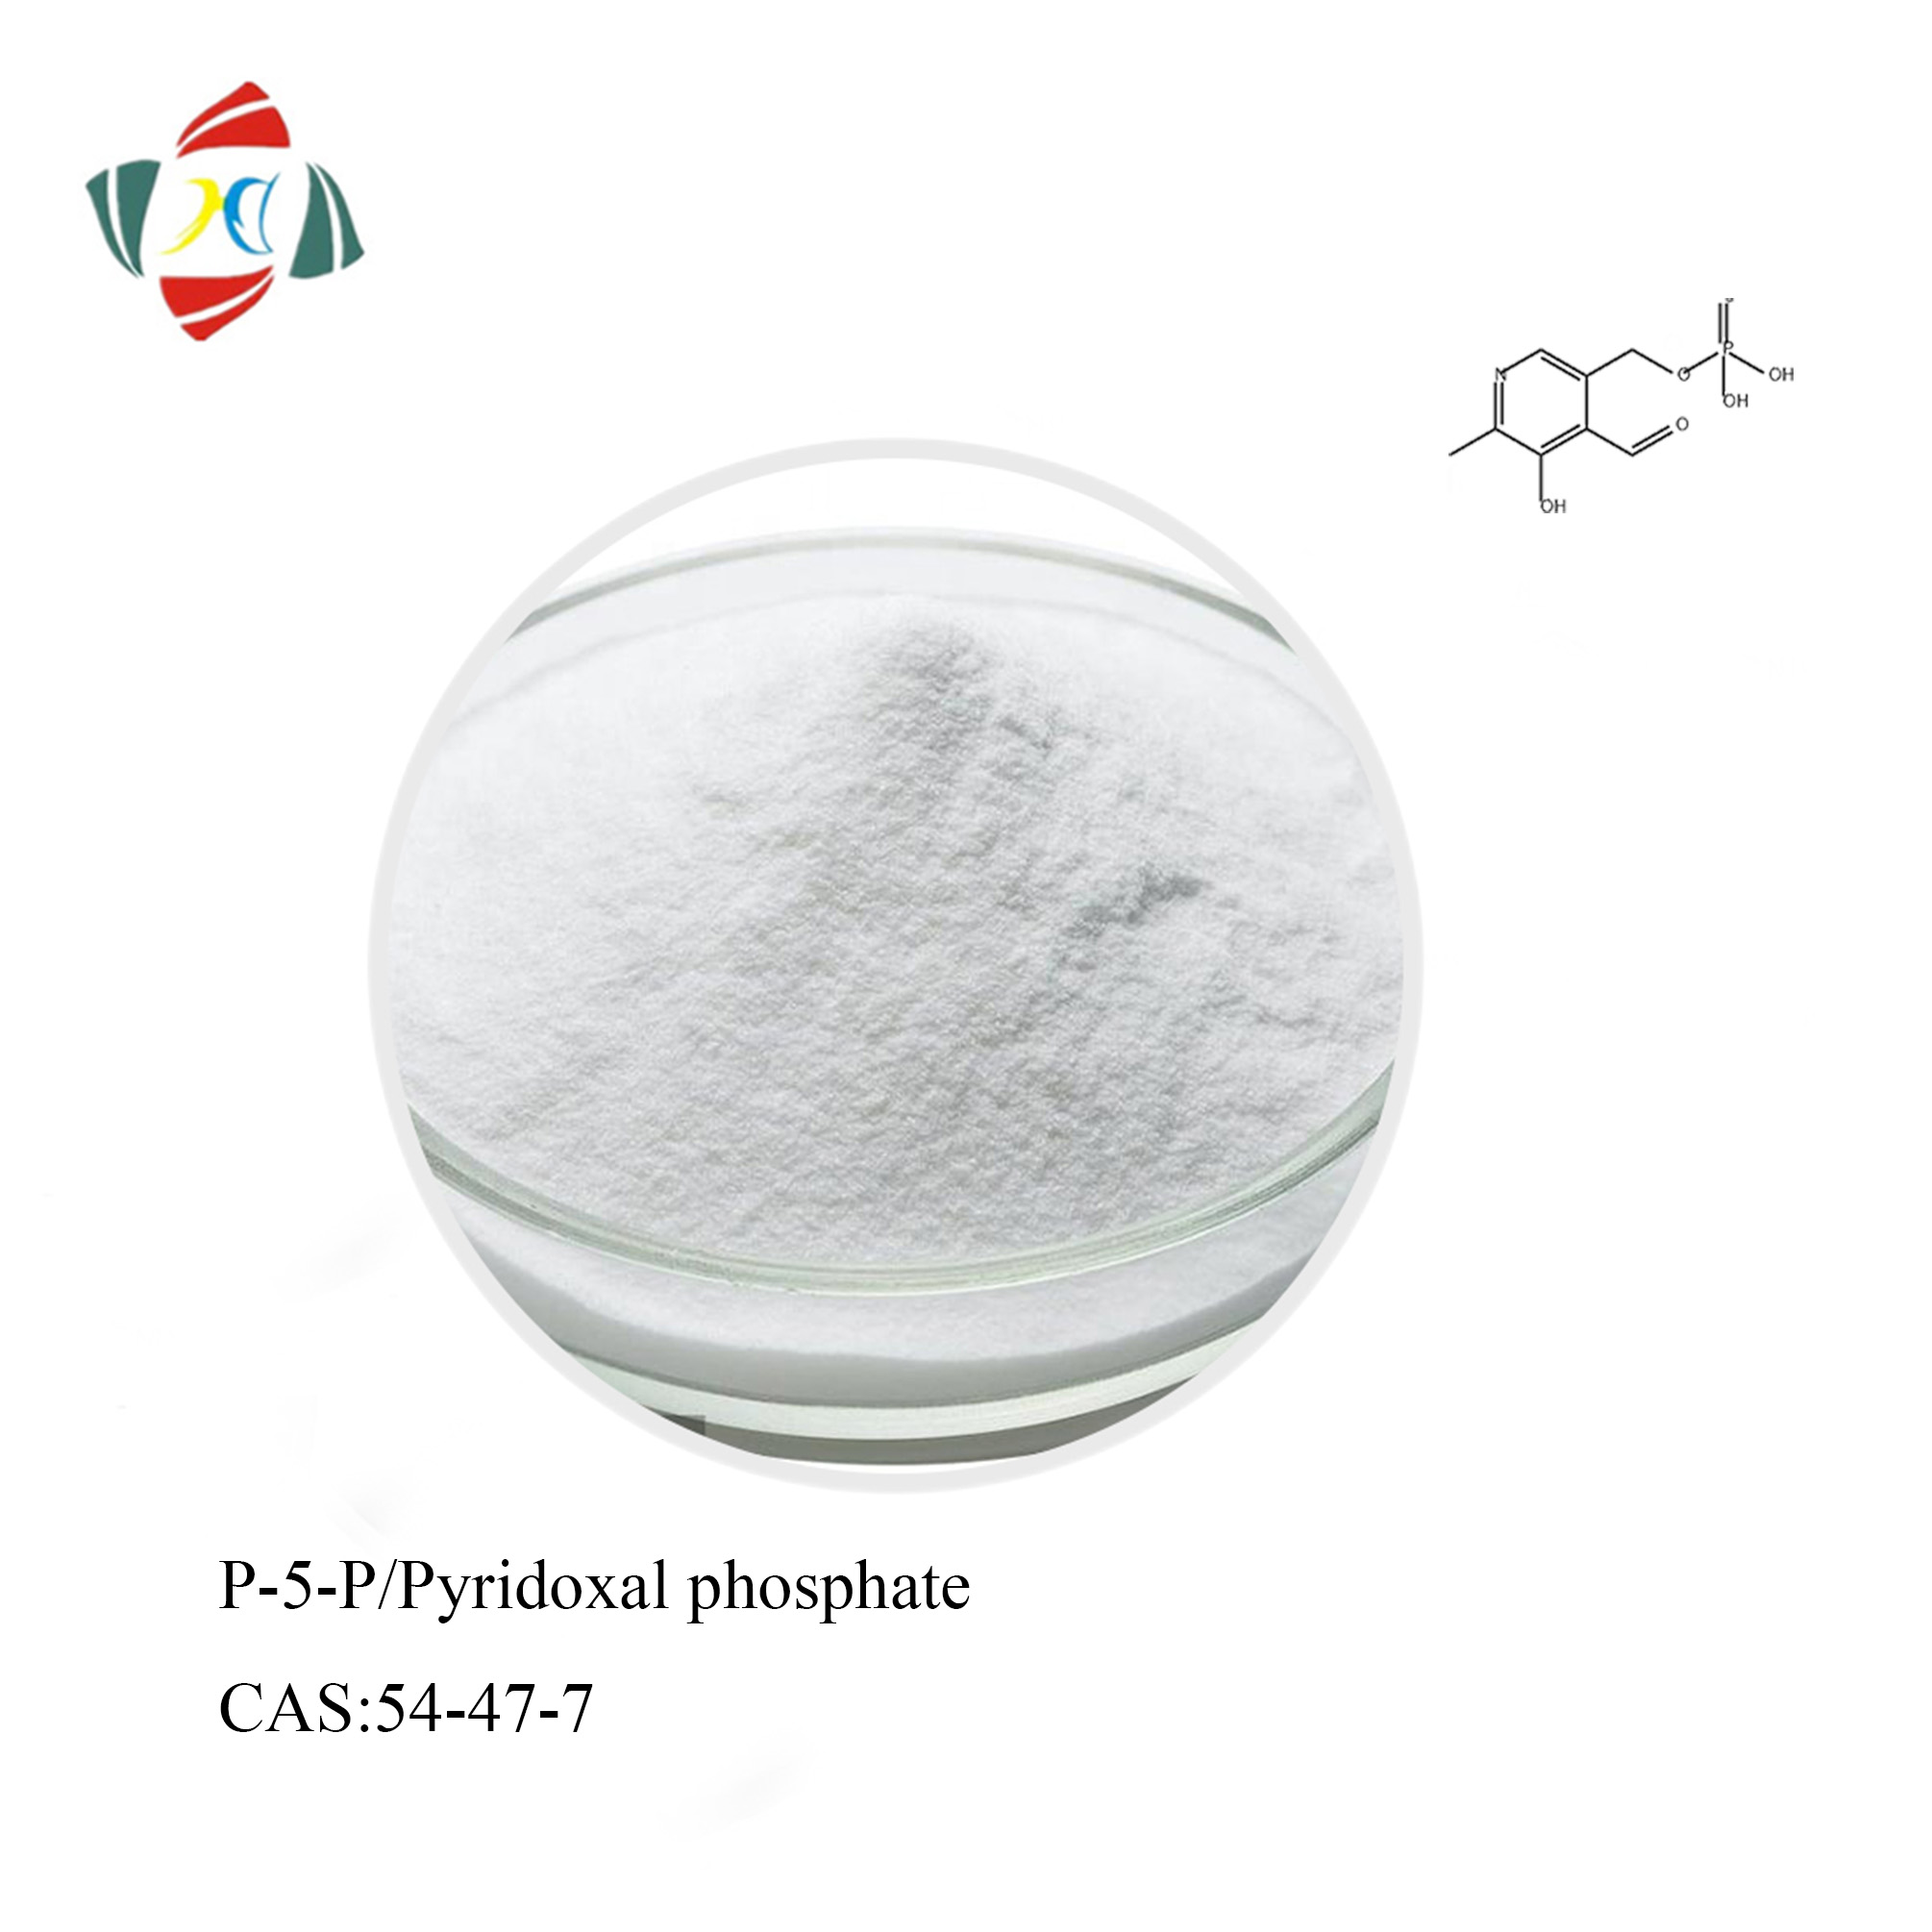 Acheter Pyridoxal 5 Phosphate/Vitamine B6 CAS 54-47-7,Pyridoxal 5 Phosphate/Vitamine B6 CAS 54-47-7 Prix,Pyridoxal 5 Phosphate/Vitamine B6 CAS 54-47-7 Marques,Pyridoxal 5 Phosphate/Vitamine B6 CAS 54-47-7 Fabricant,Pyridoxal 5 Phosphate/Vitamine B6 CAS 54-47-7 Quotes,Pyridoxal 5 Phosphate/Vitamine B6 CAS 54-47-7 Société,